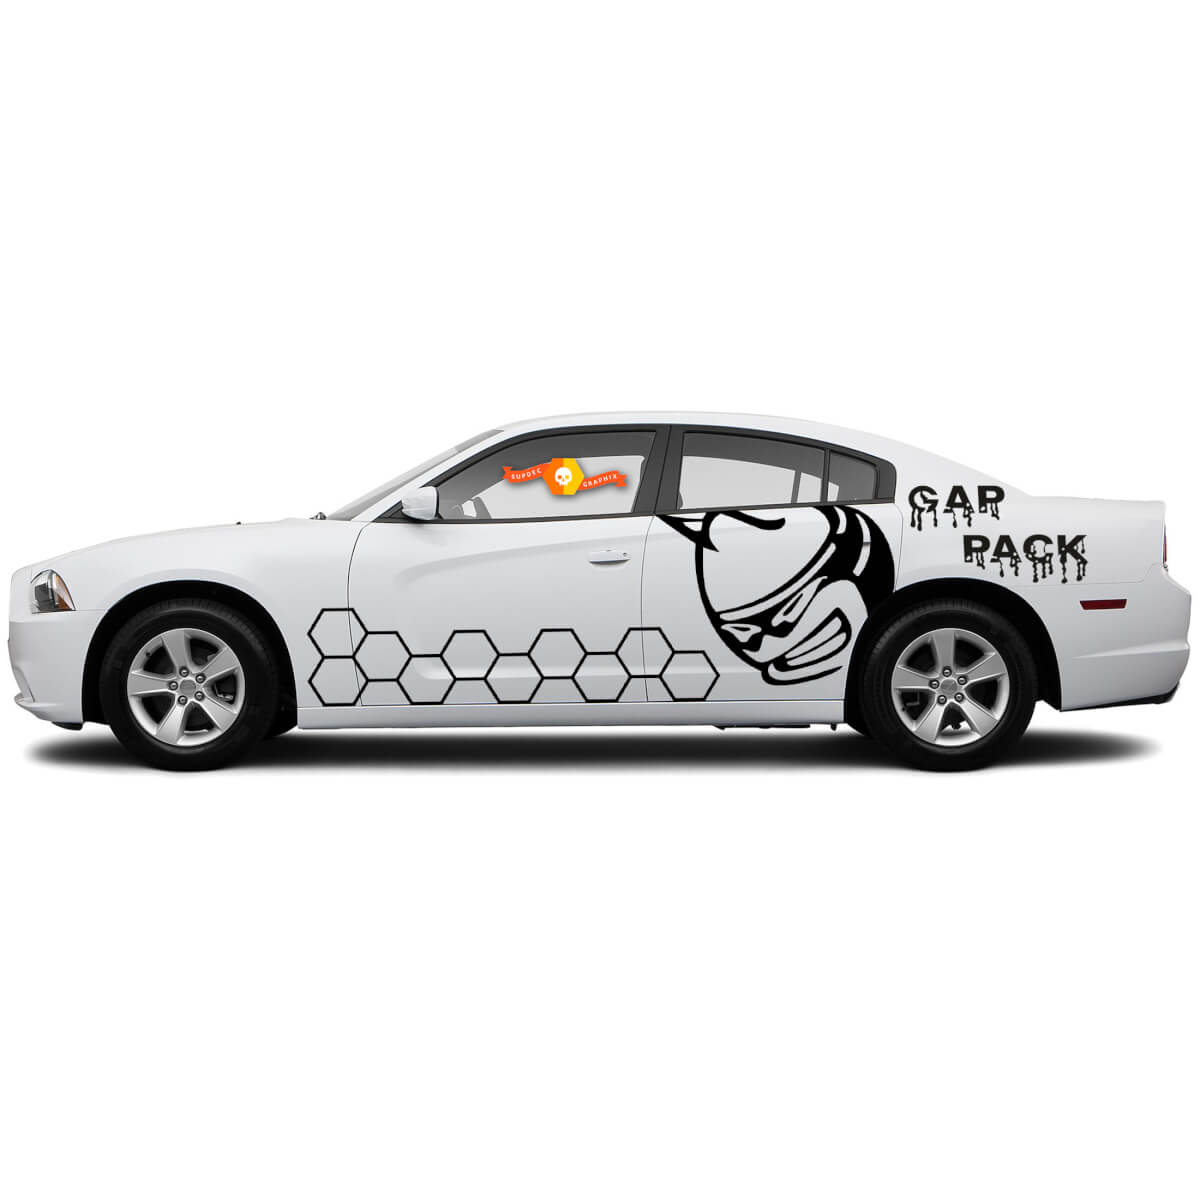 Dodge Charger oder Challenger Gap Pack ScatPack Wabenstreifen-Aufkleber
